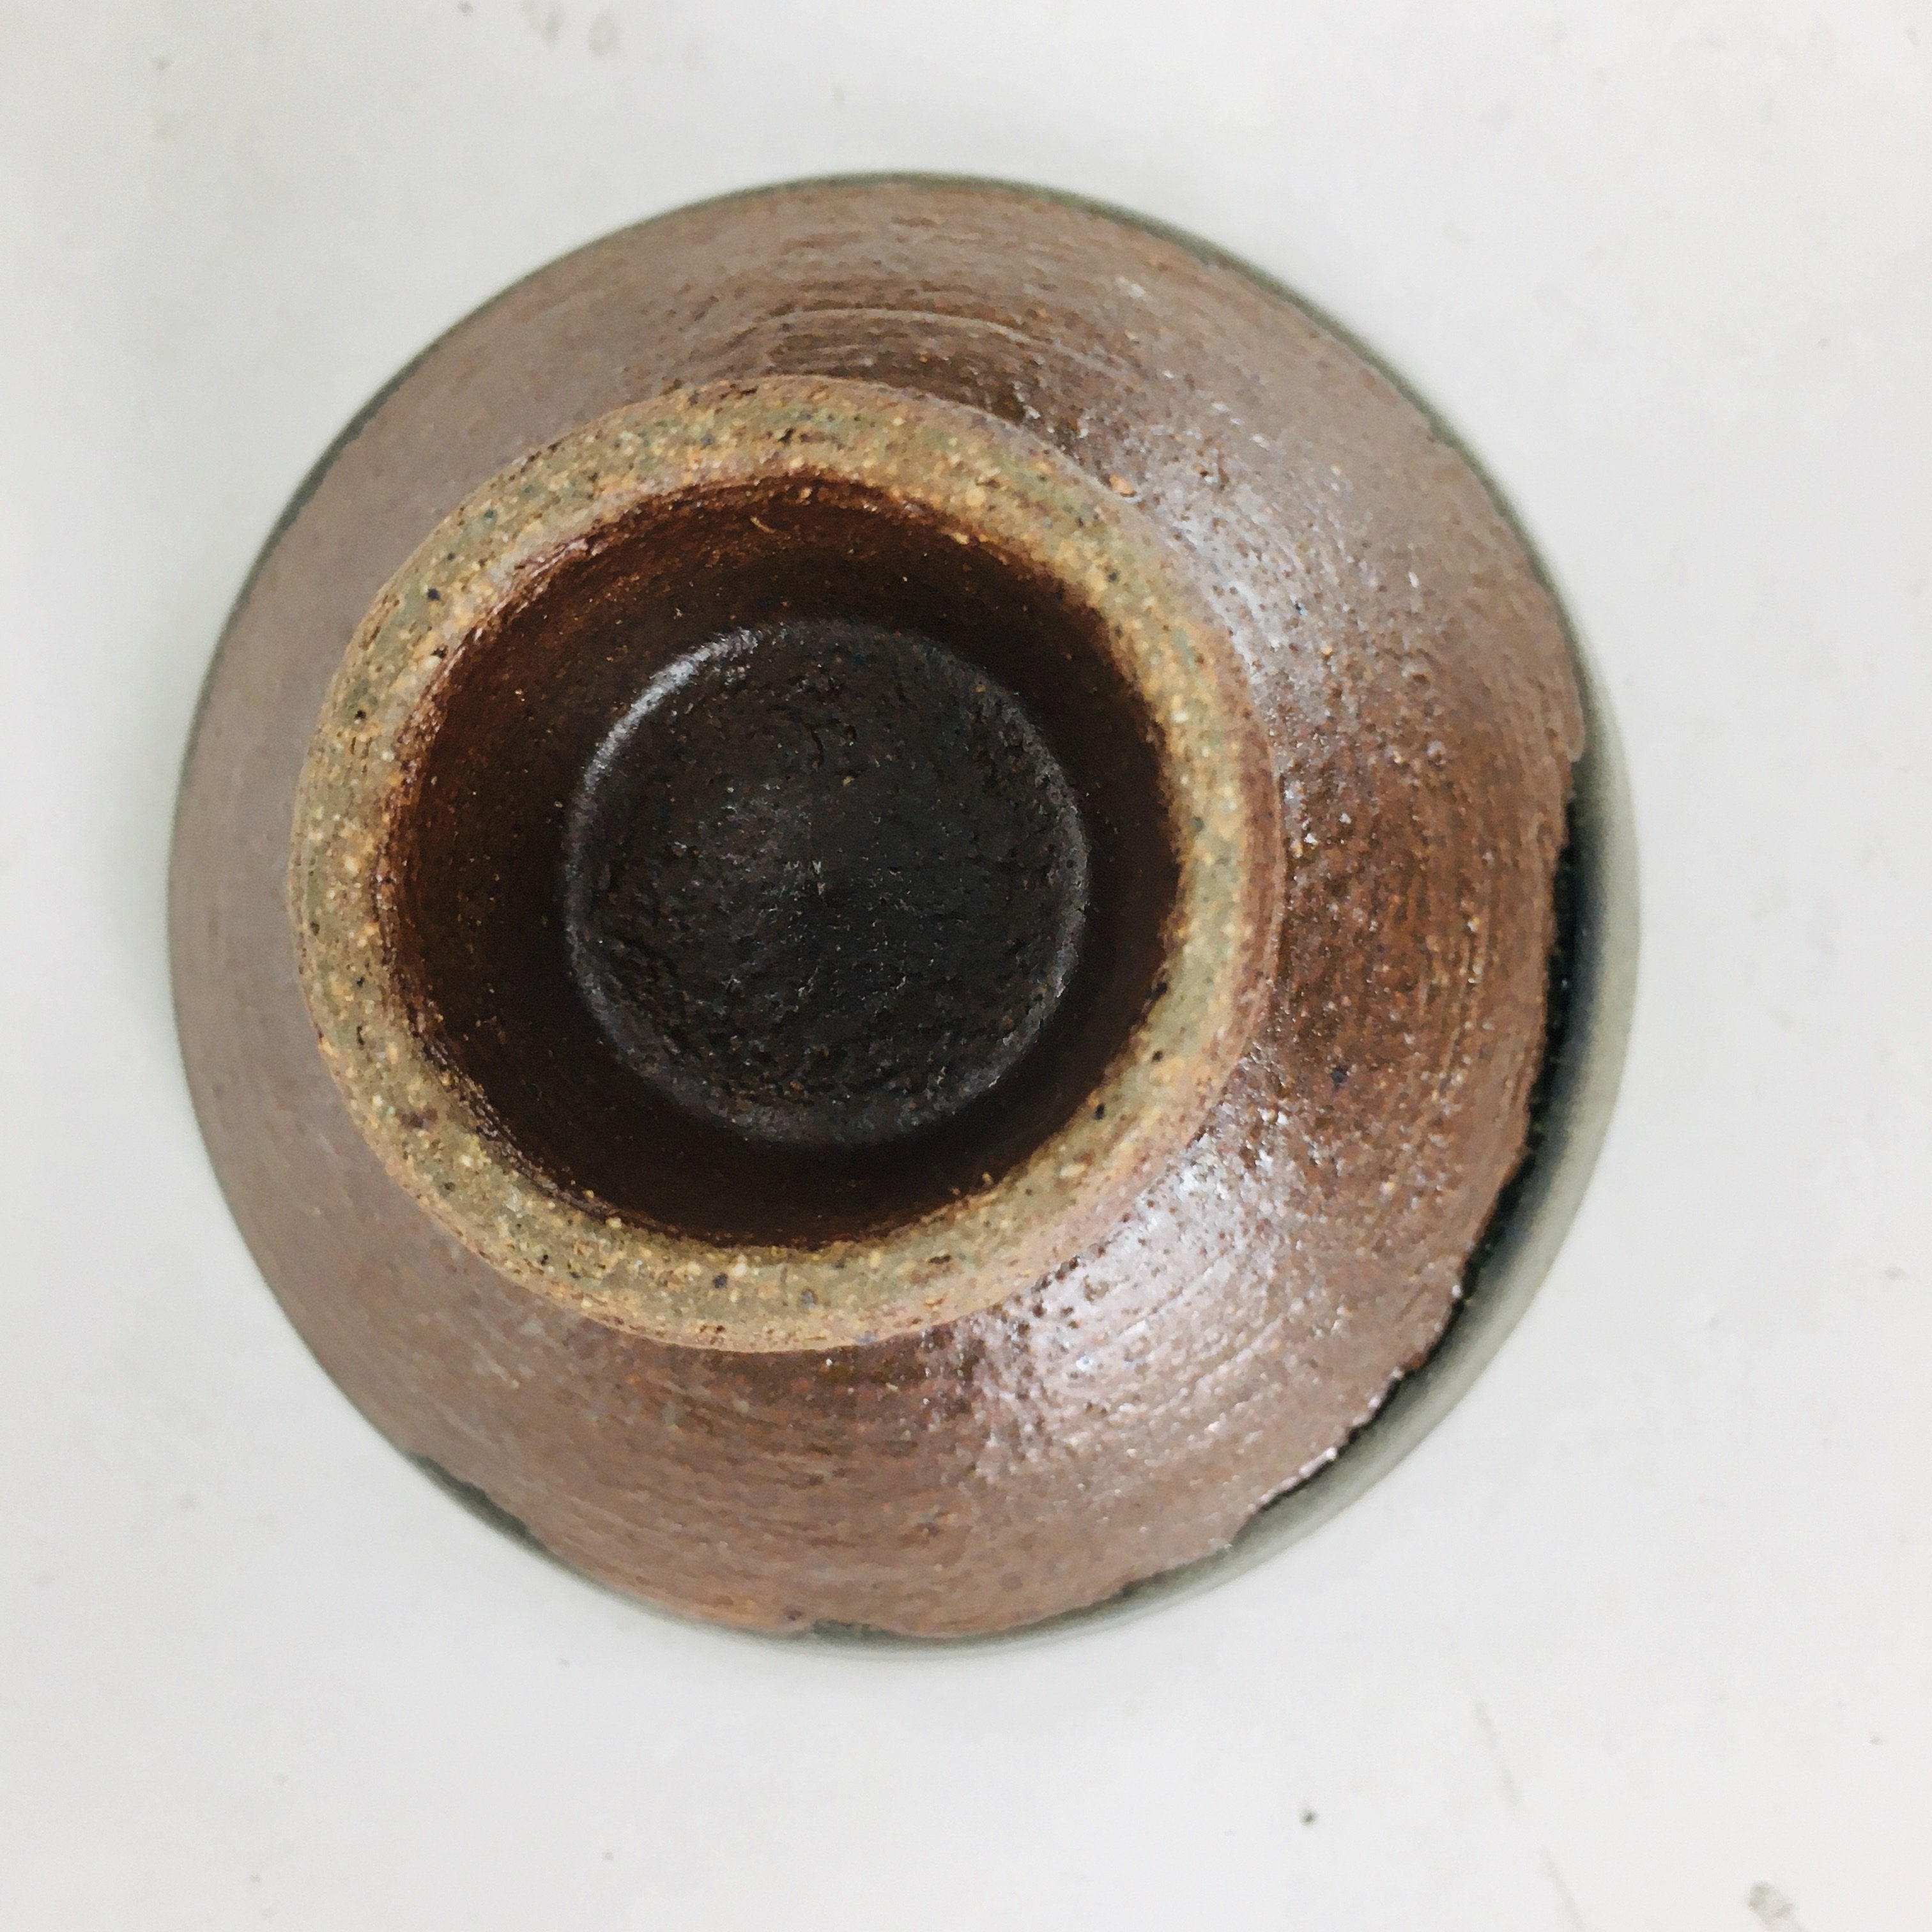 Japanese Ceramic Sake Cup Vtg Pottery Sakazuki Ochoko Brown Bluish White GU 918